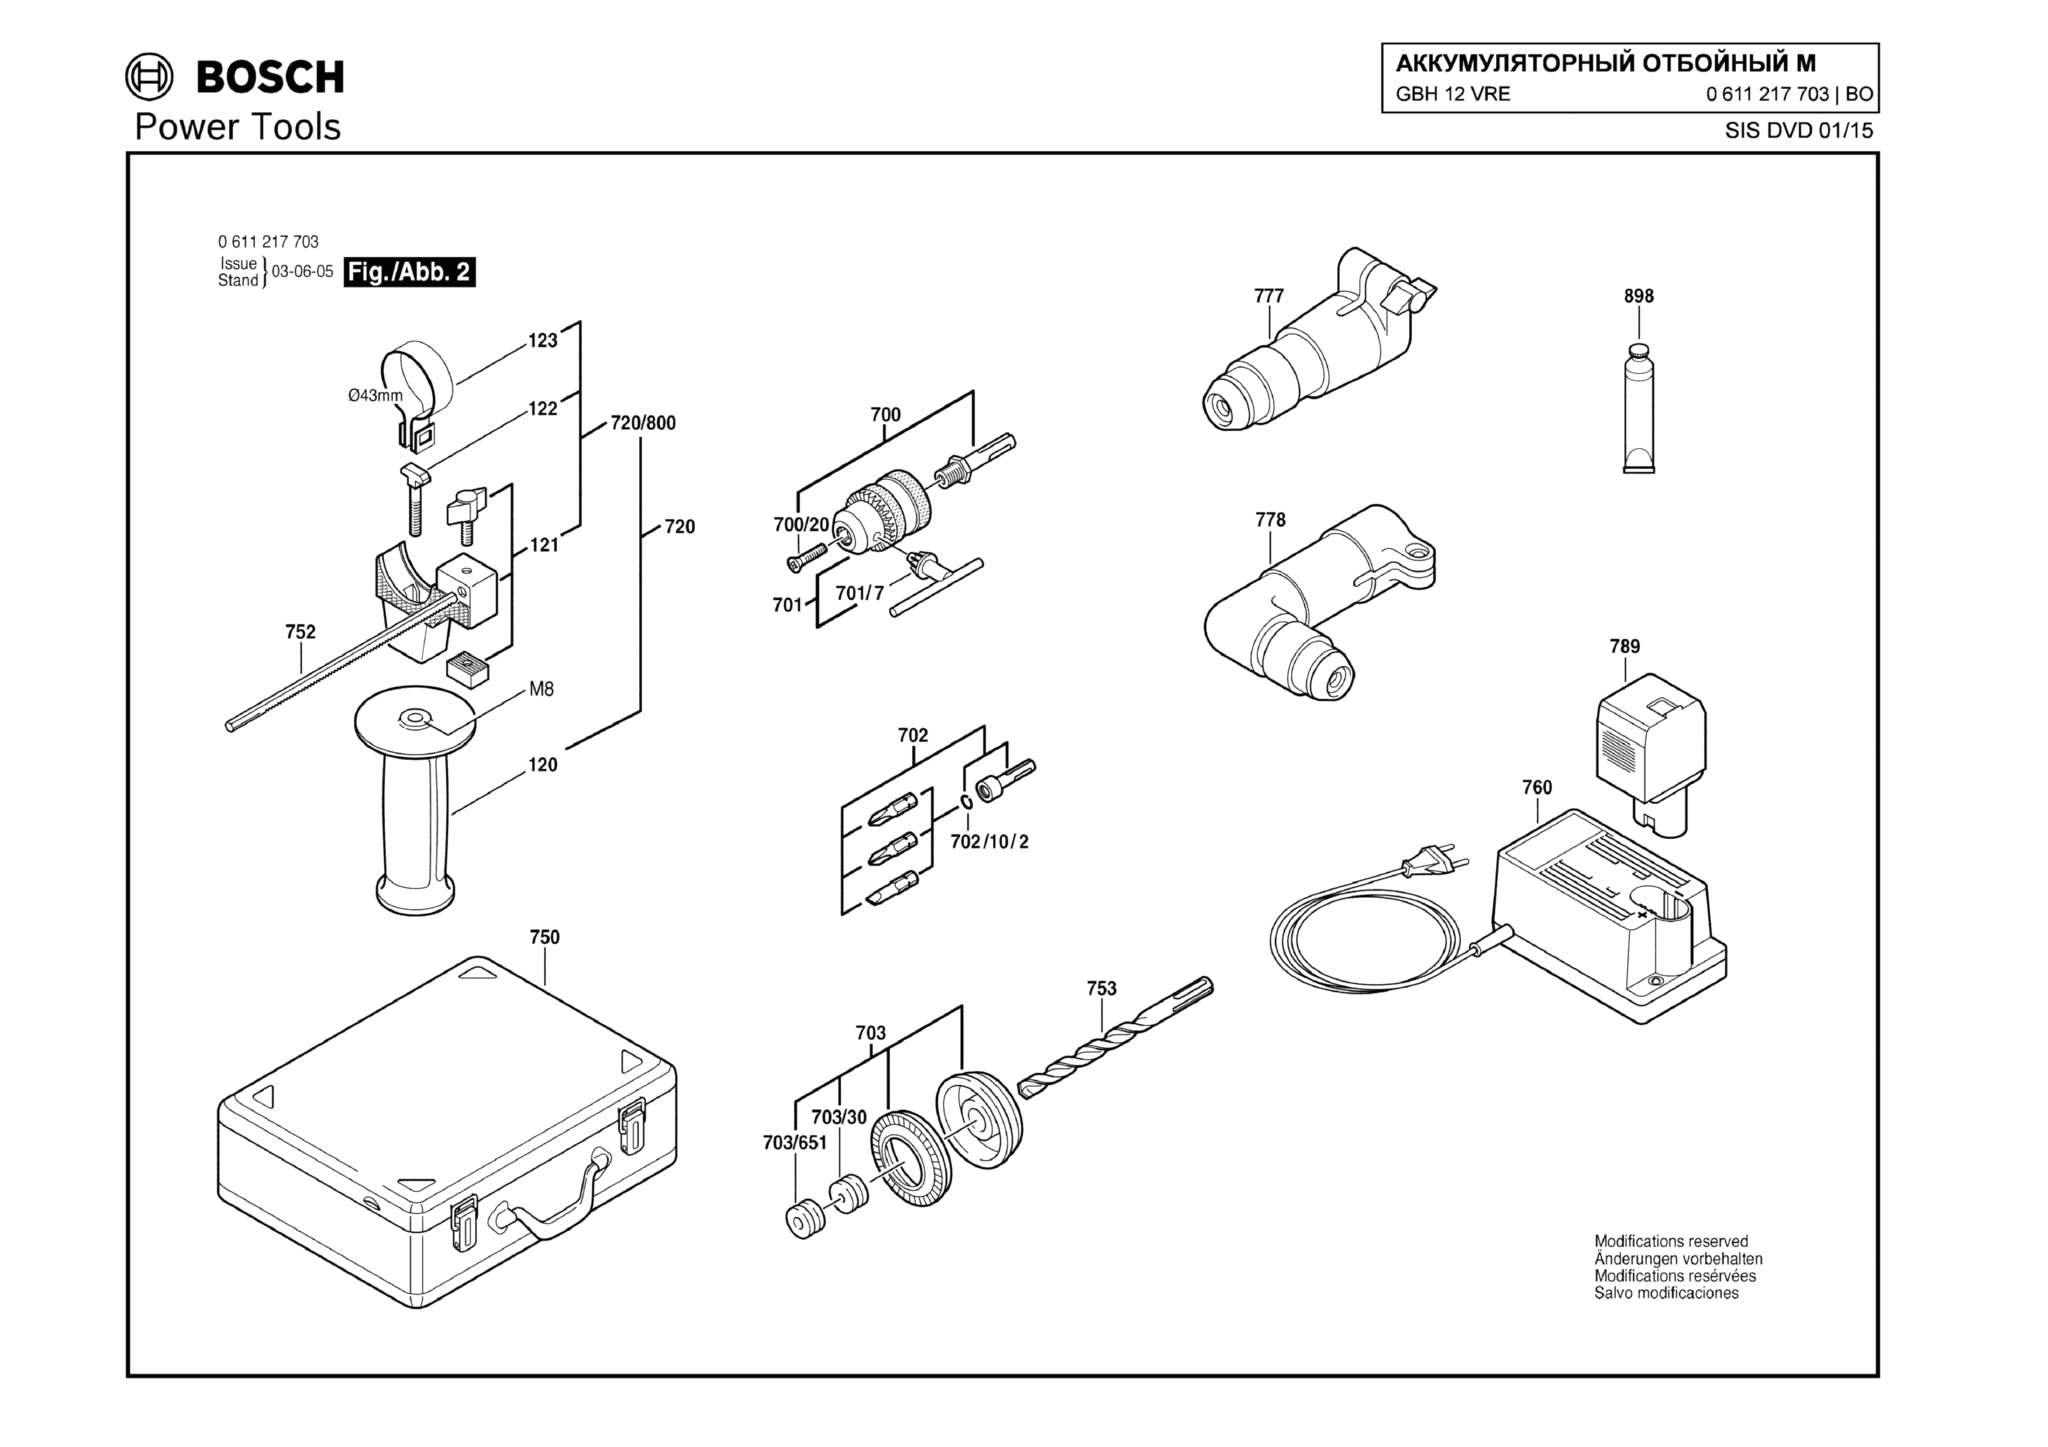 Запчасти, схема и деталировка Bosch GBH 12 VRE (ТИП 0611217703) (ЧАСТЬ 2)